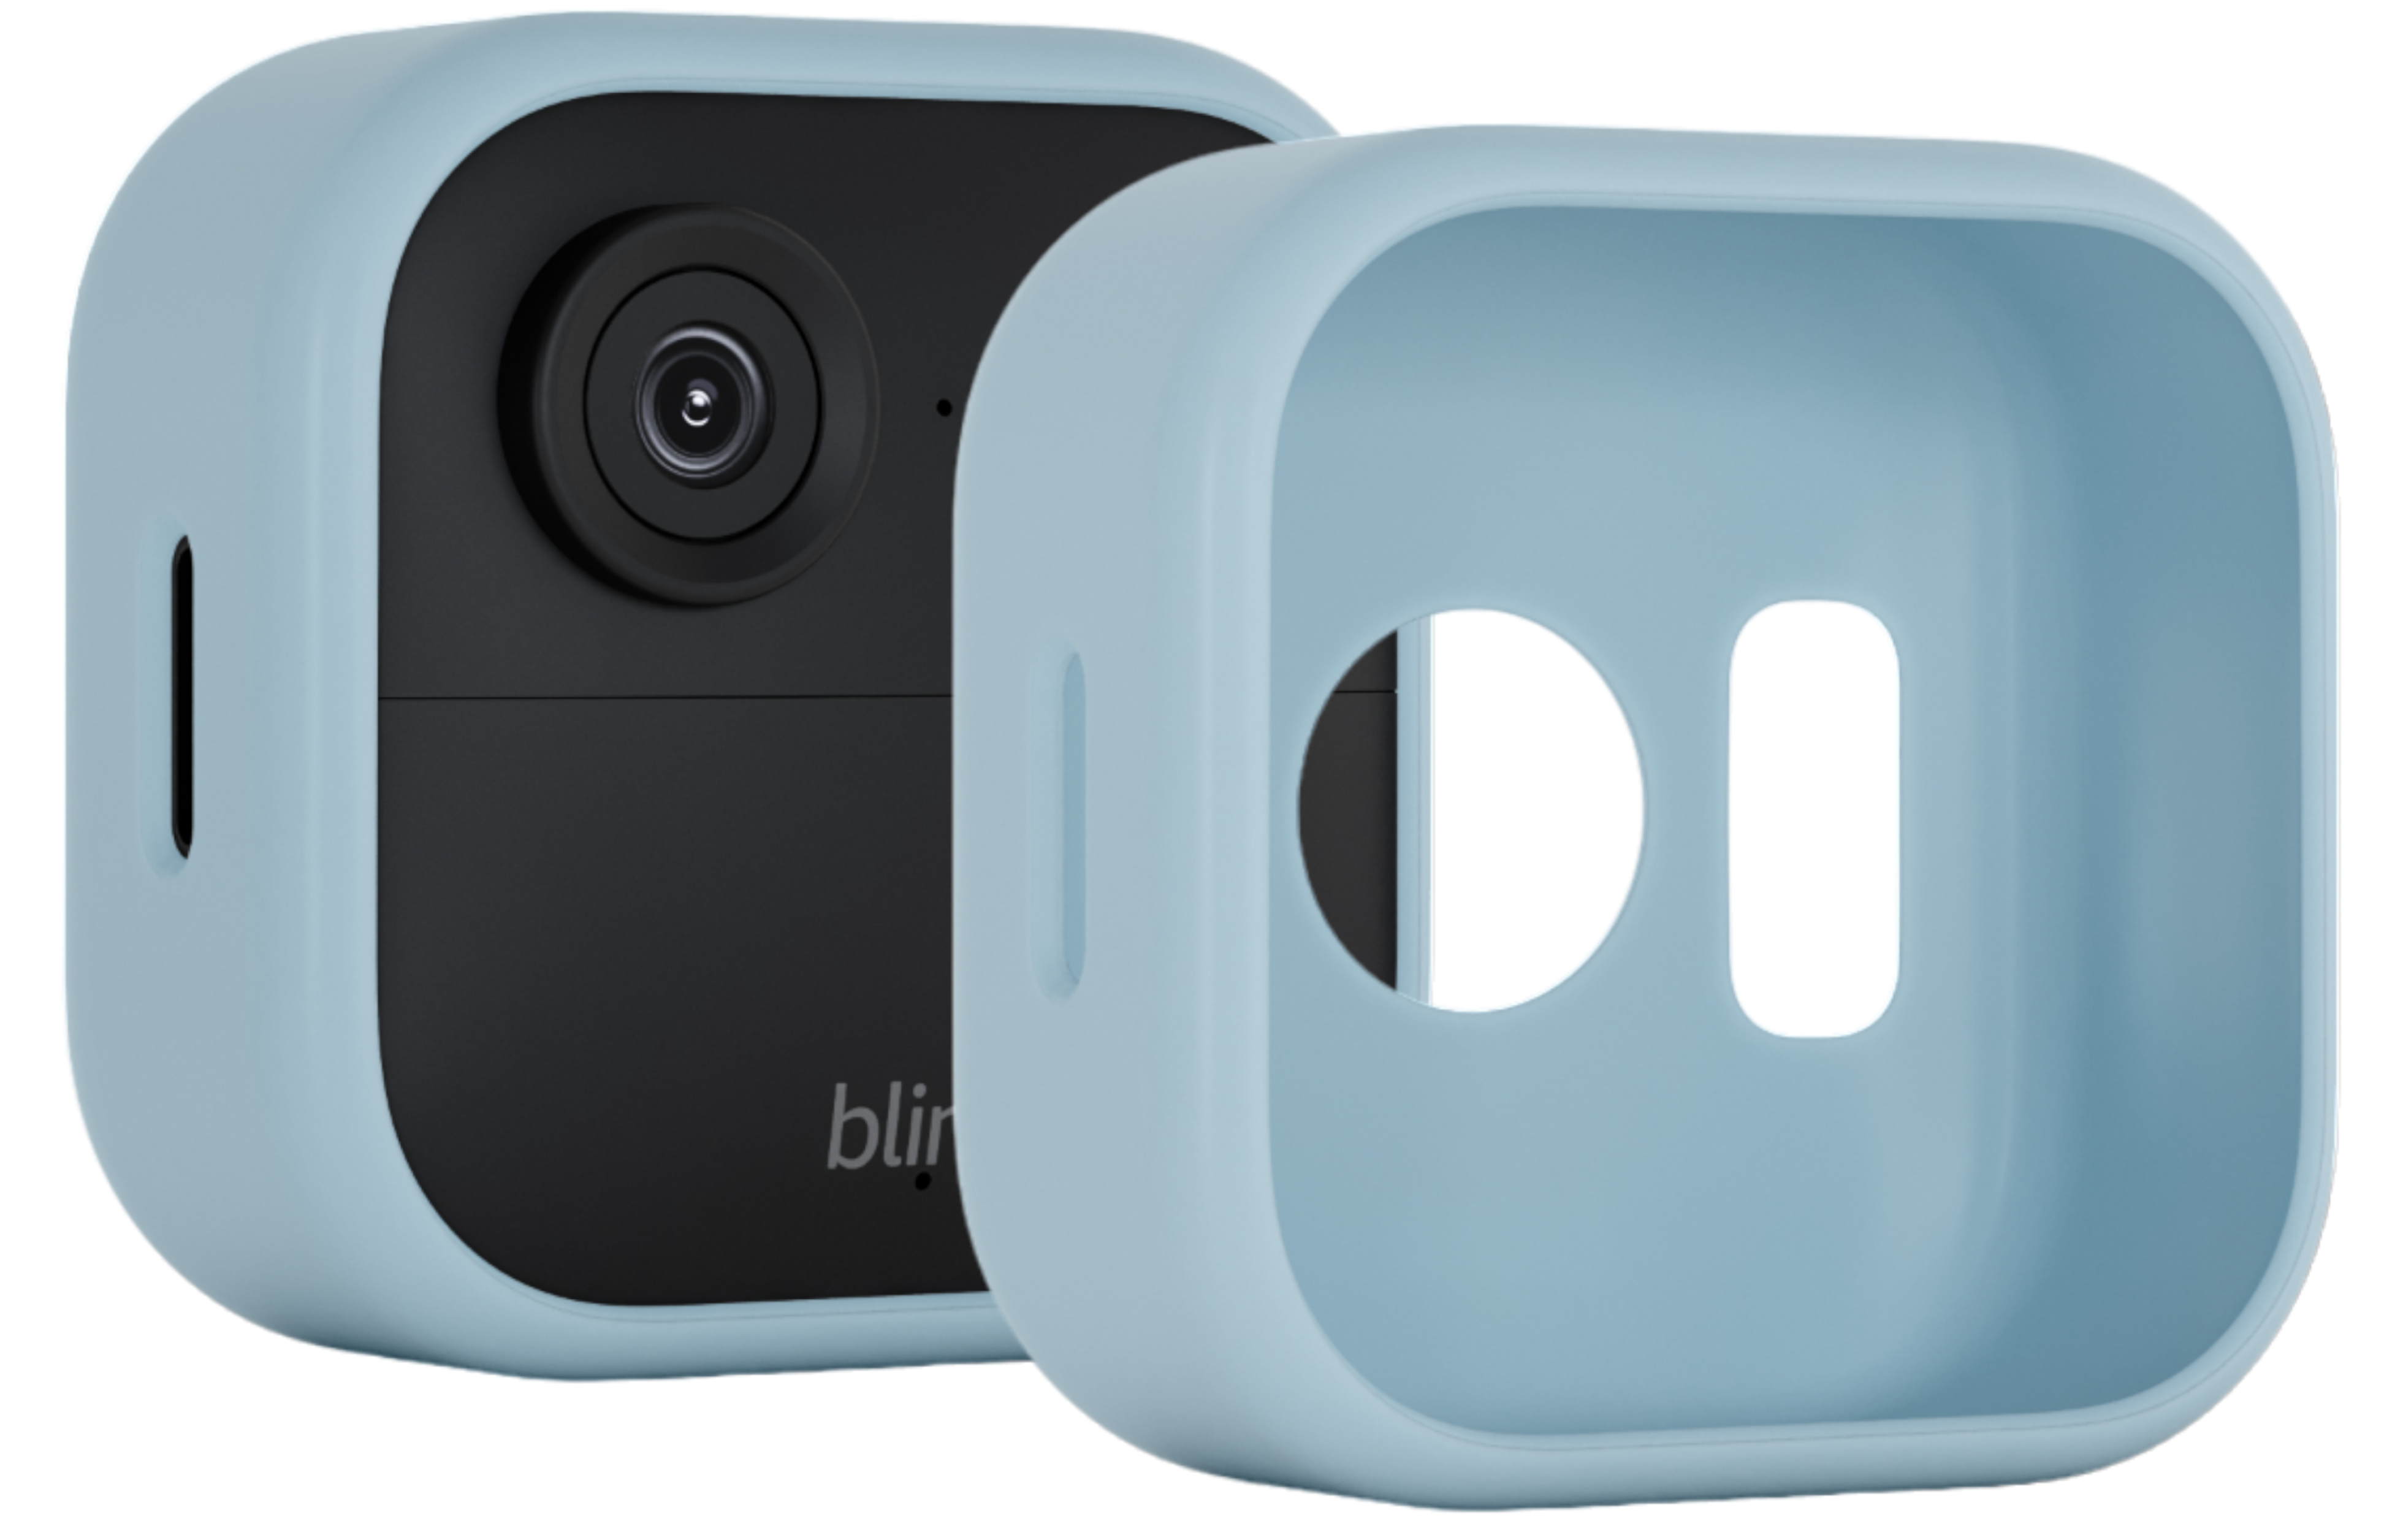 Blink soporte para cámara — Blink Support